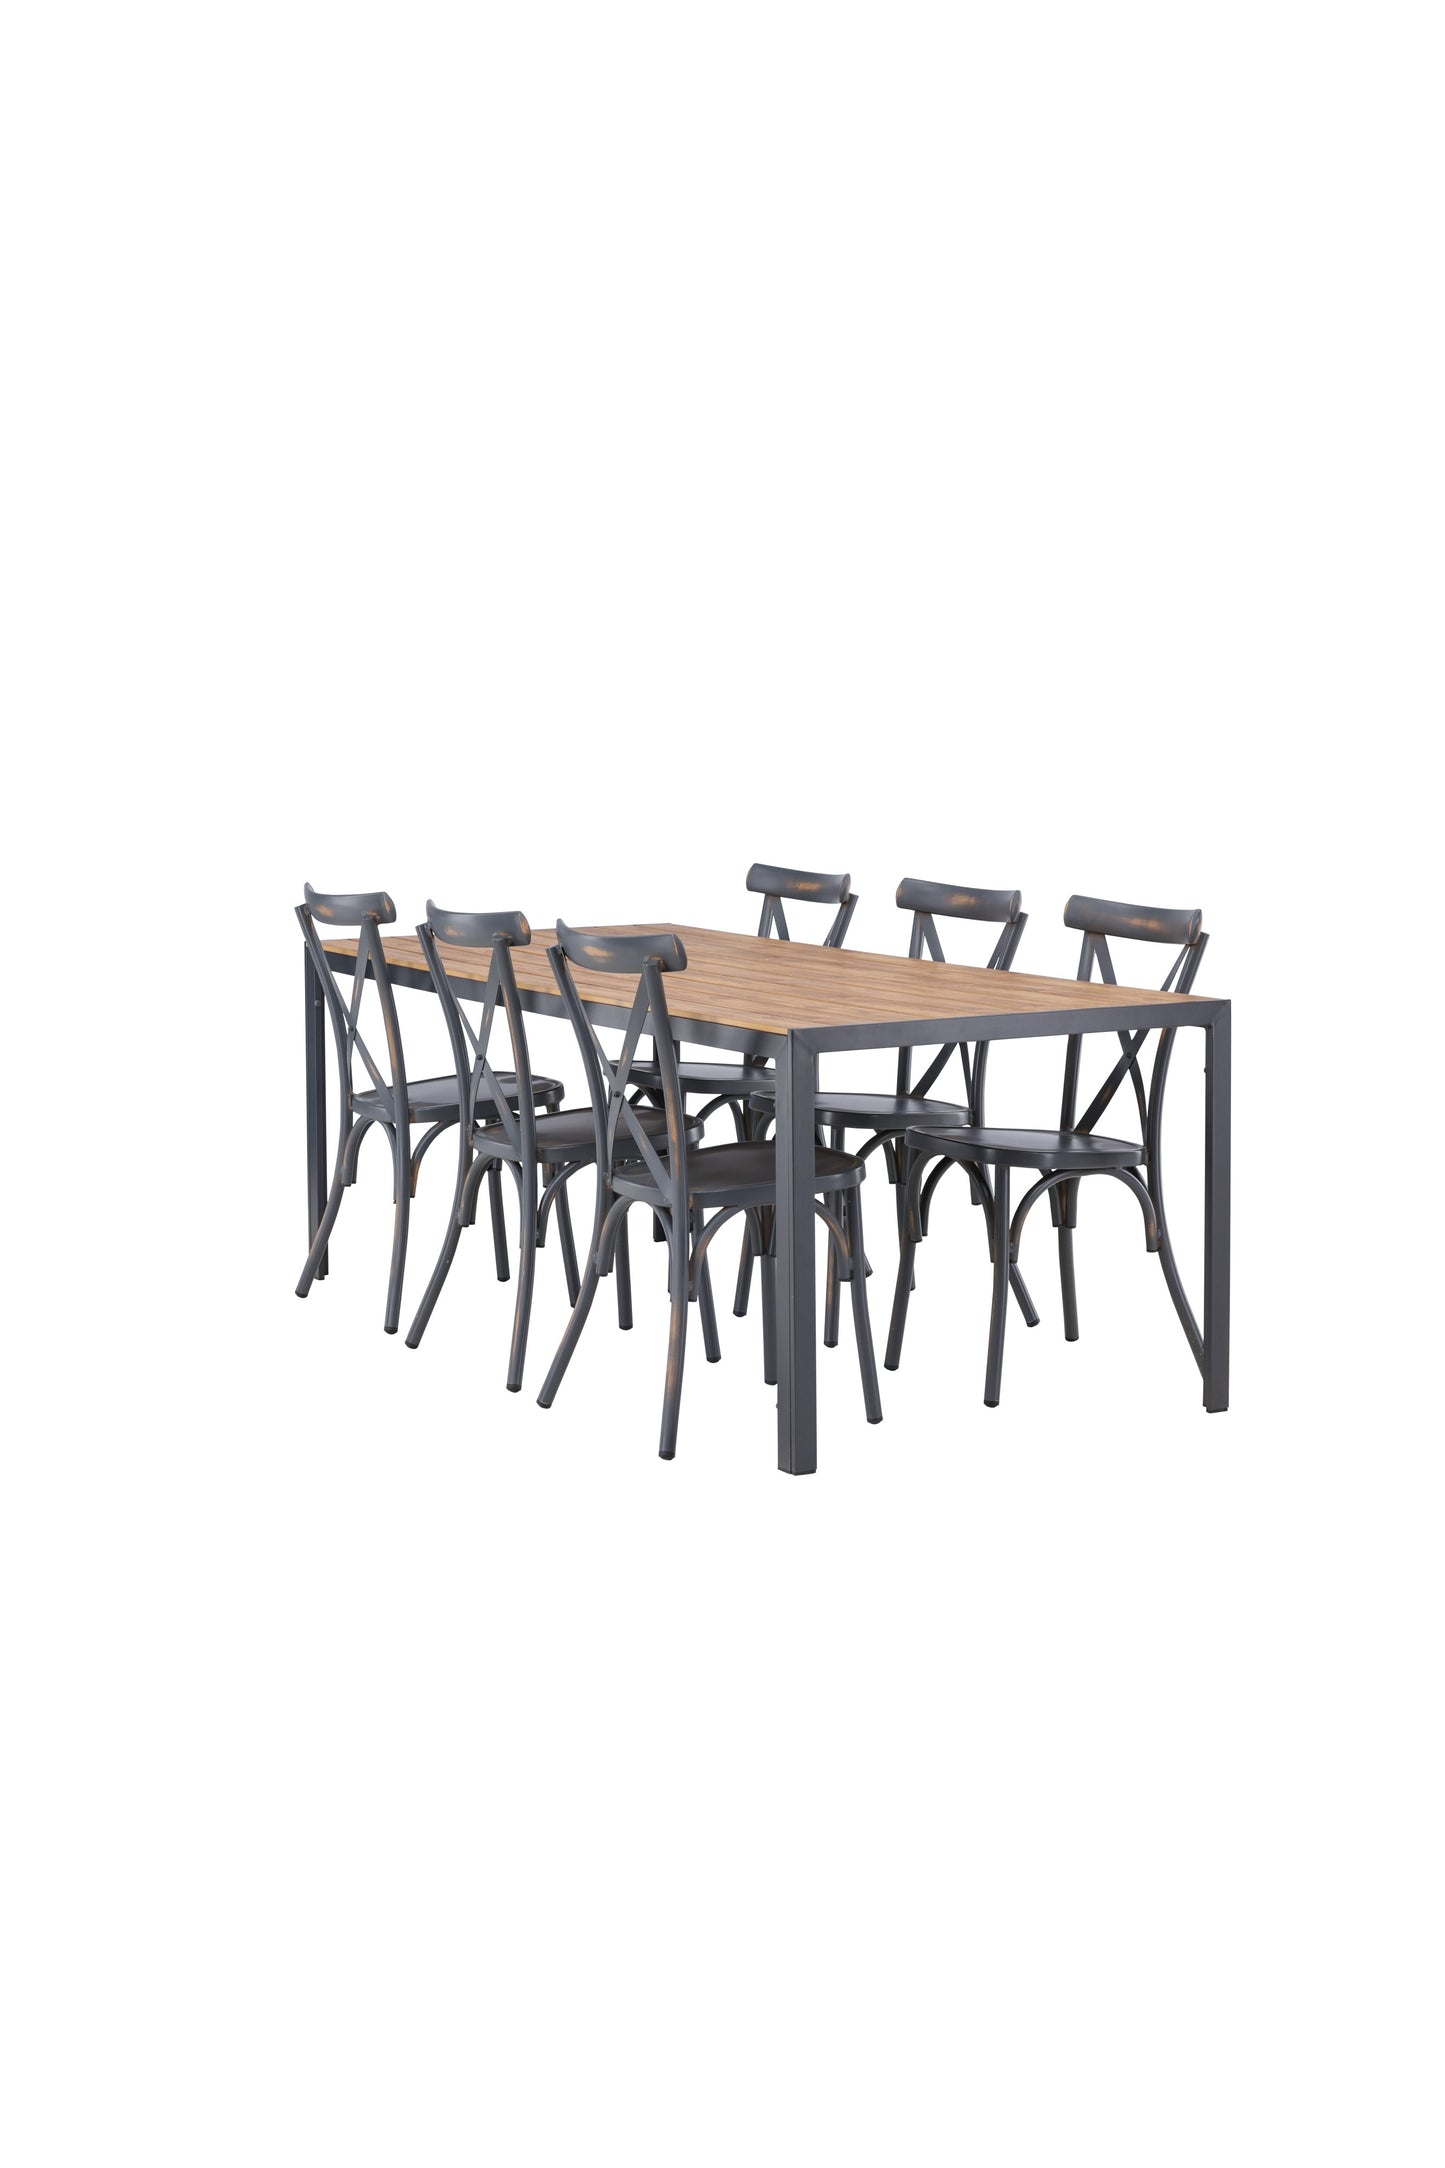 Break - Spisebord, Aluminium - Sort / Natur Rektangulær 90*200* + Tablas stol Aluminium - Sort